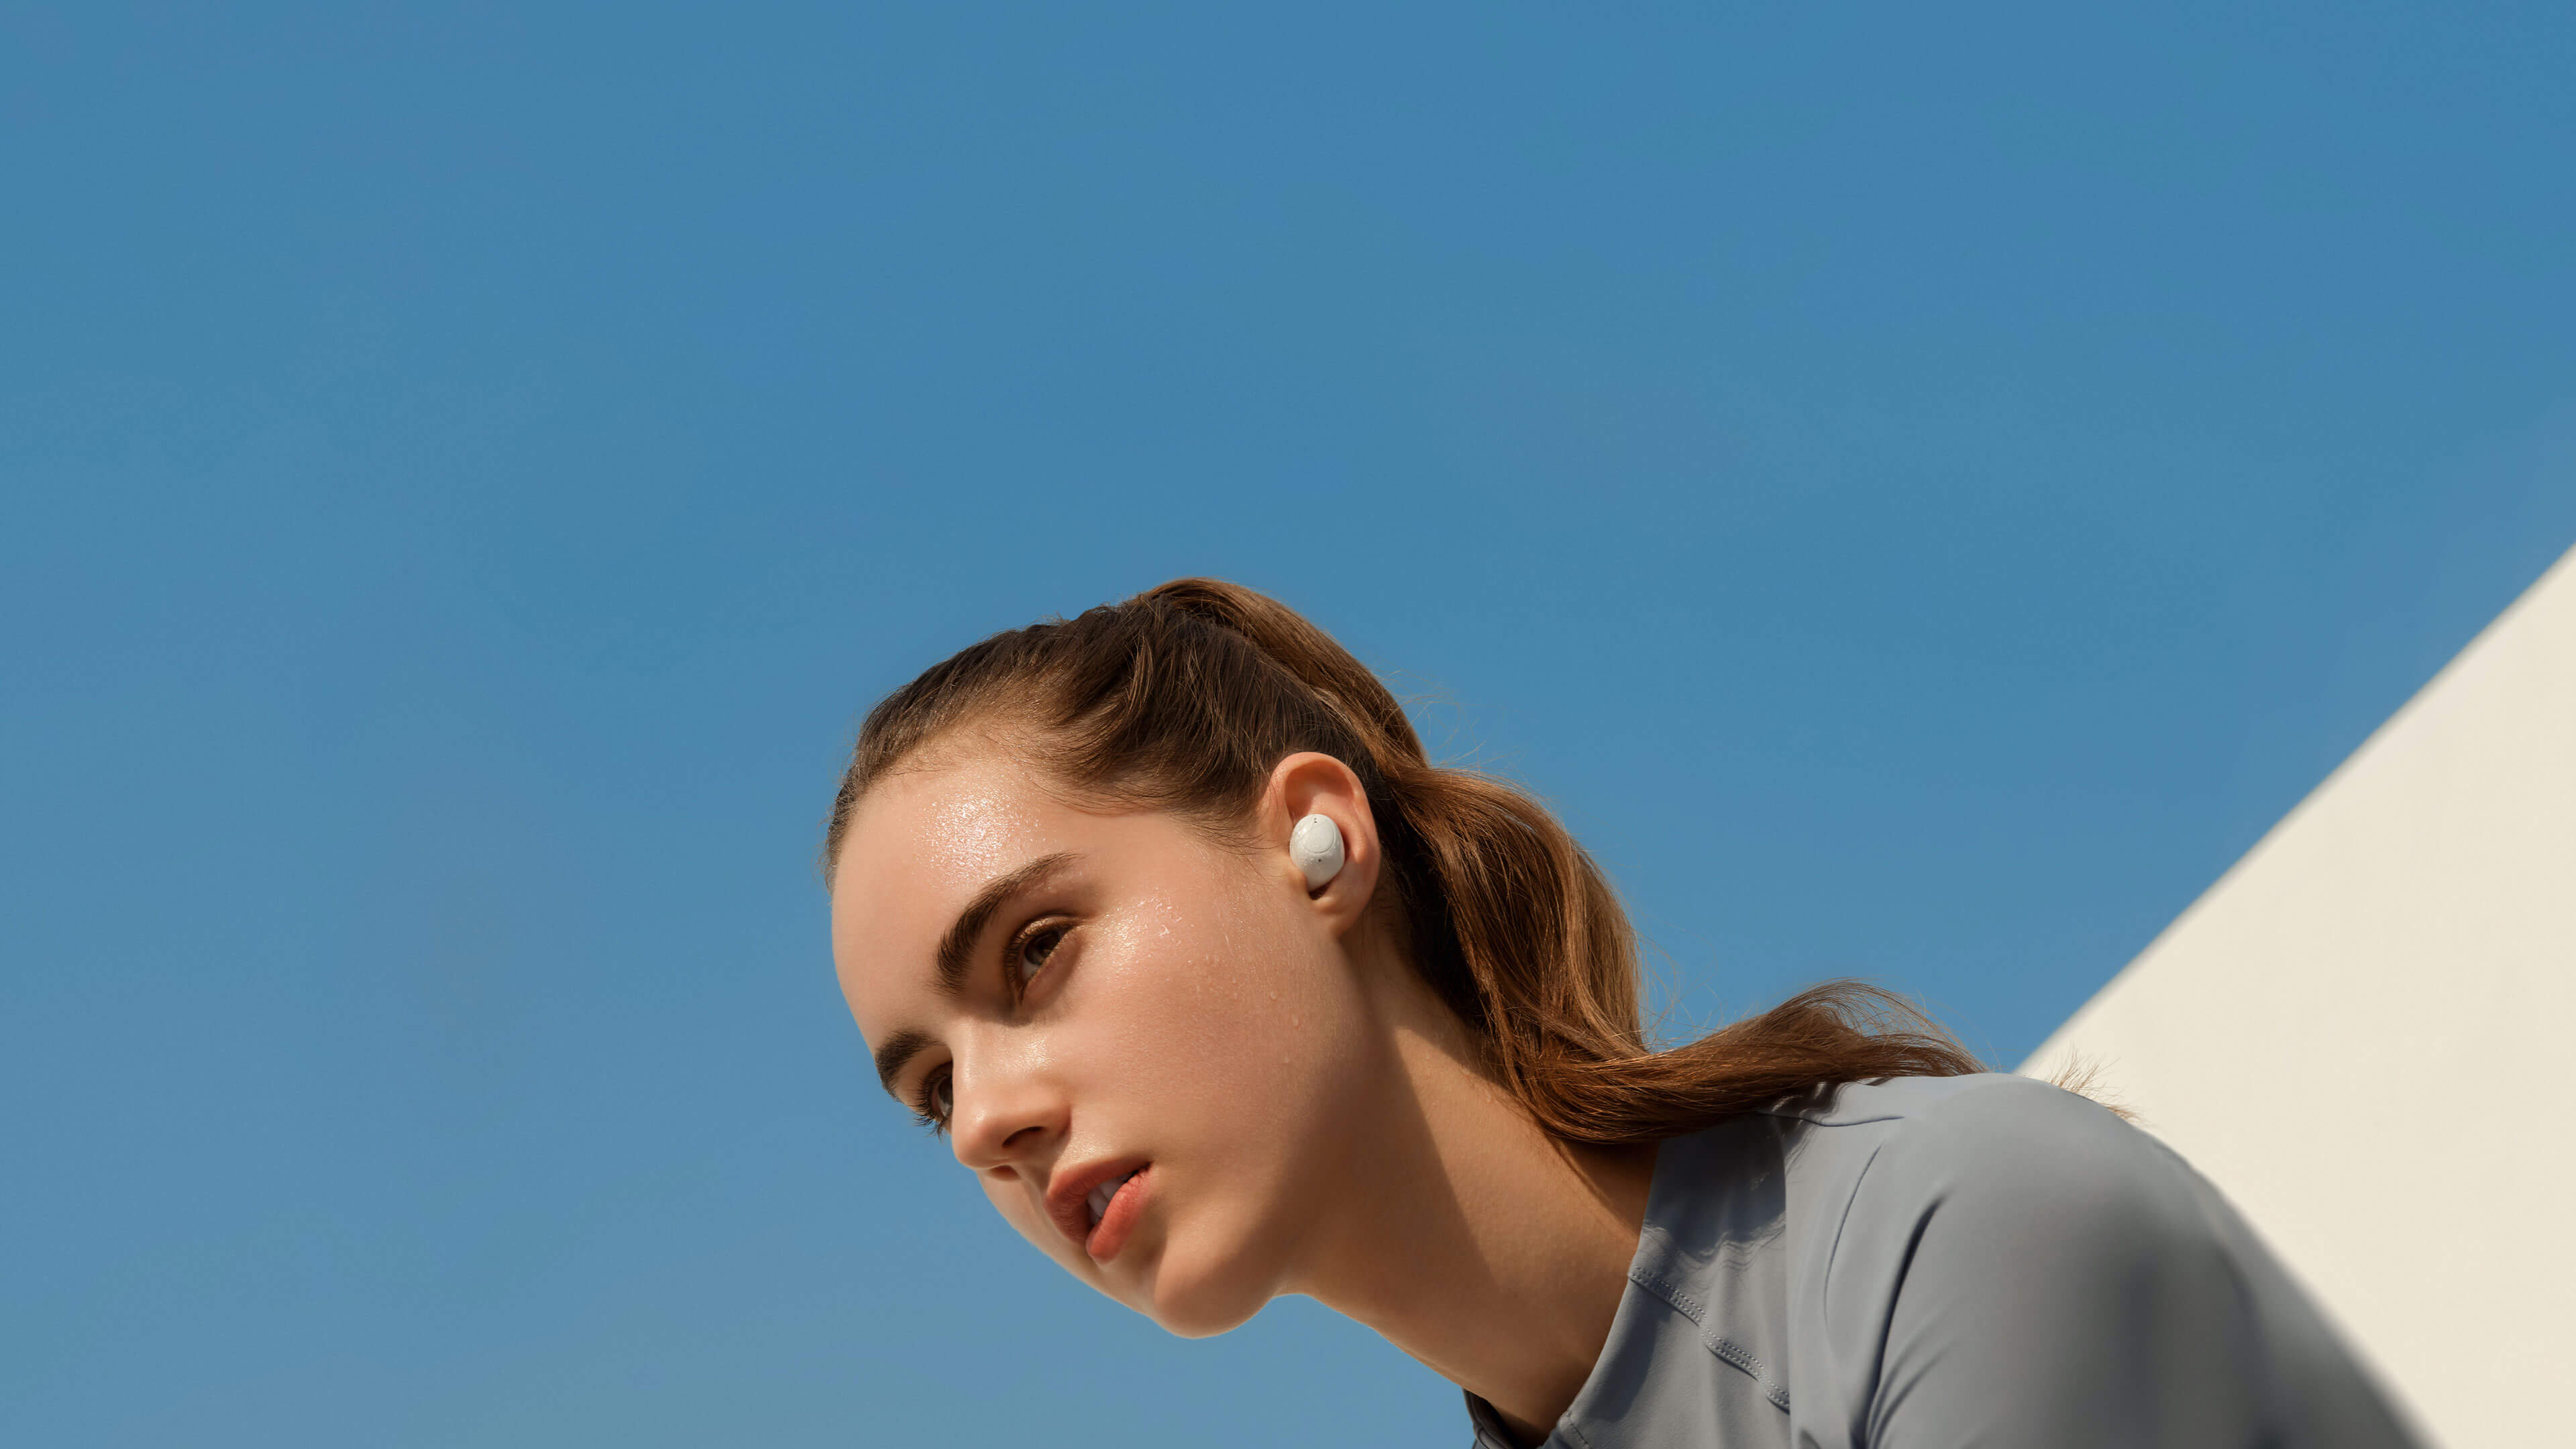 OPPO Enco-auriculares inalámbricos M33 con Bluetooth, cascos